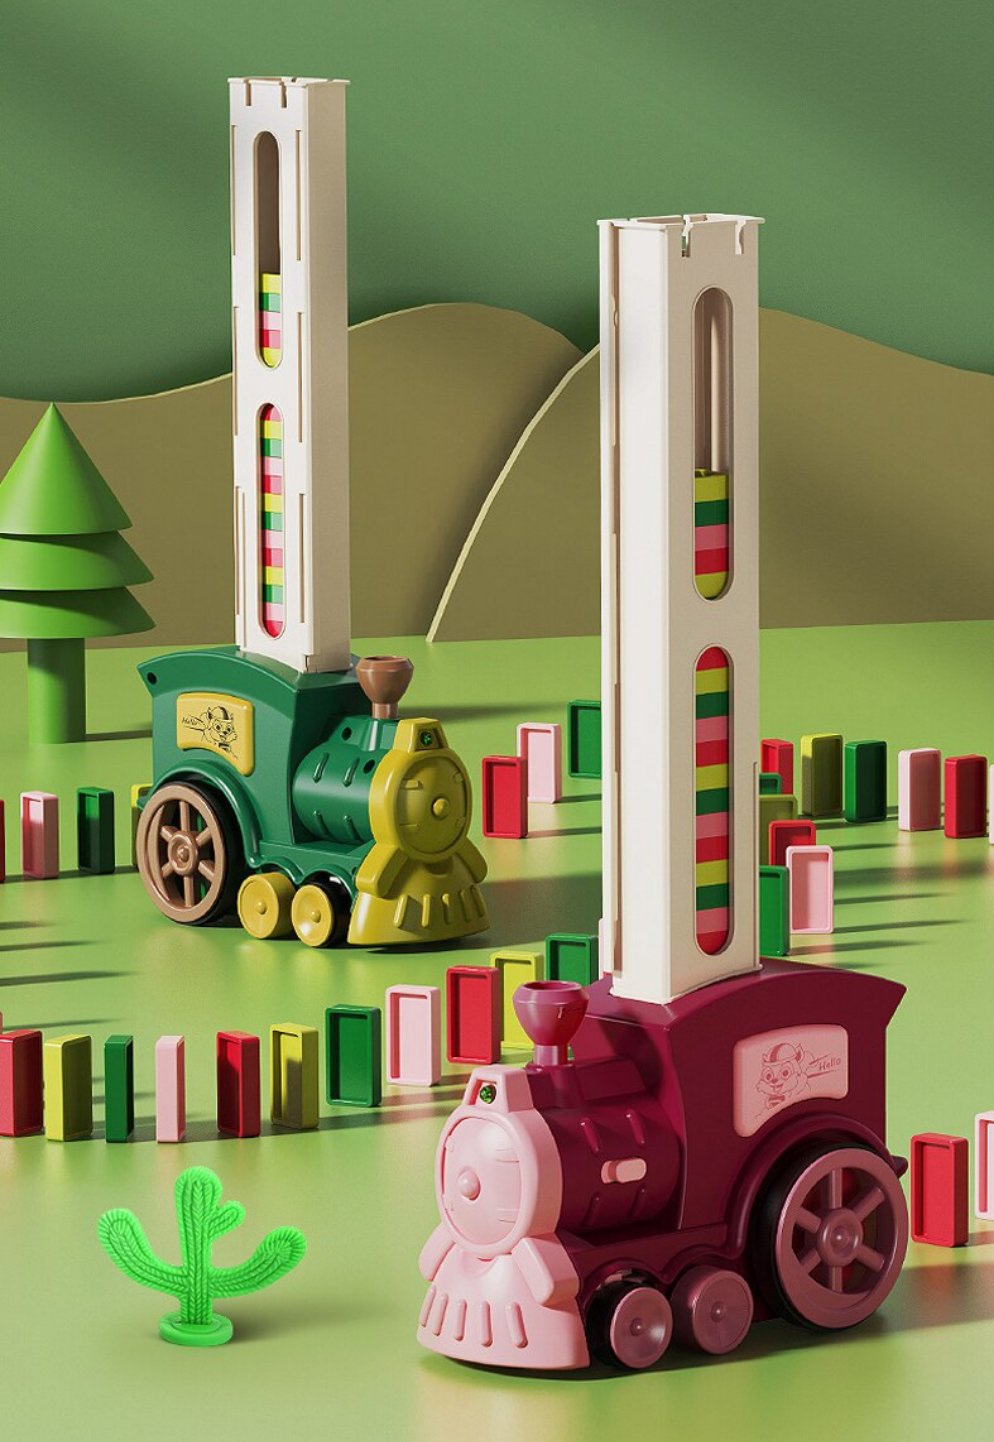 Brinquedo De Criança Com Luz Som E Movimento Trem Locomotiva